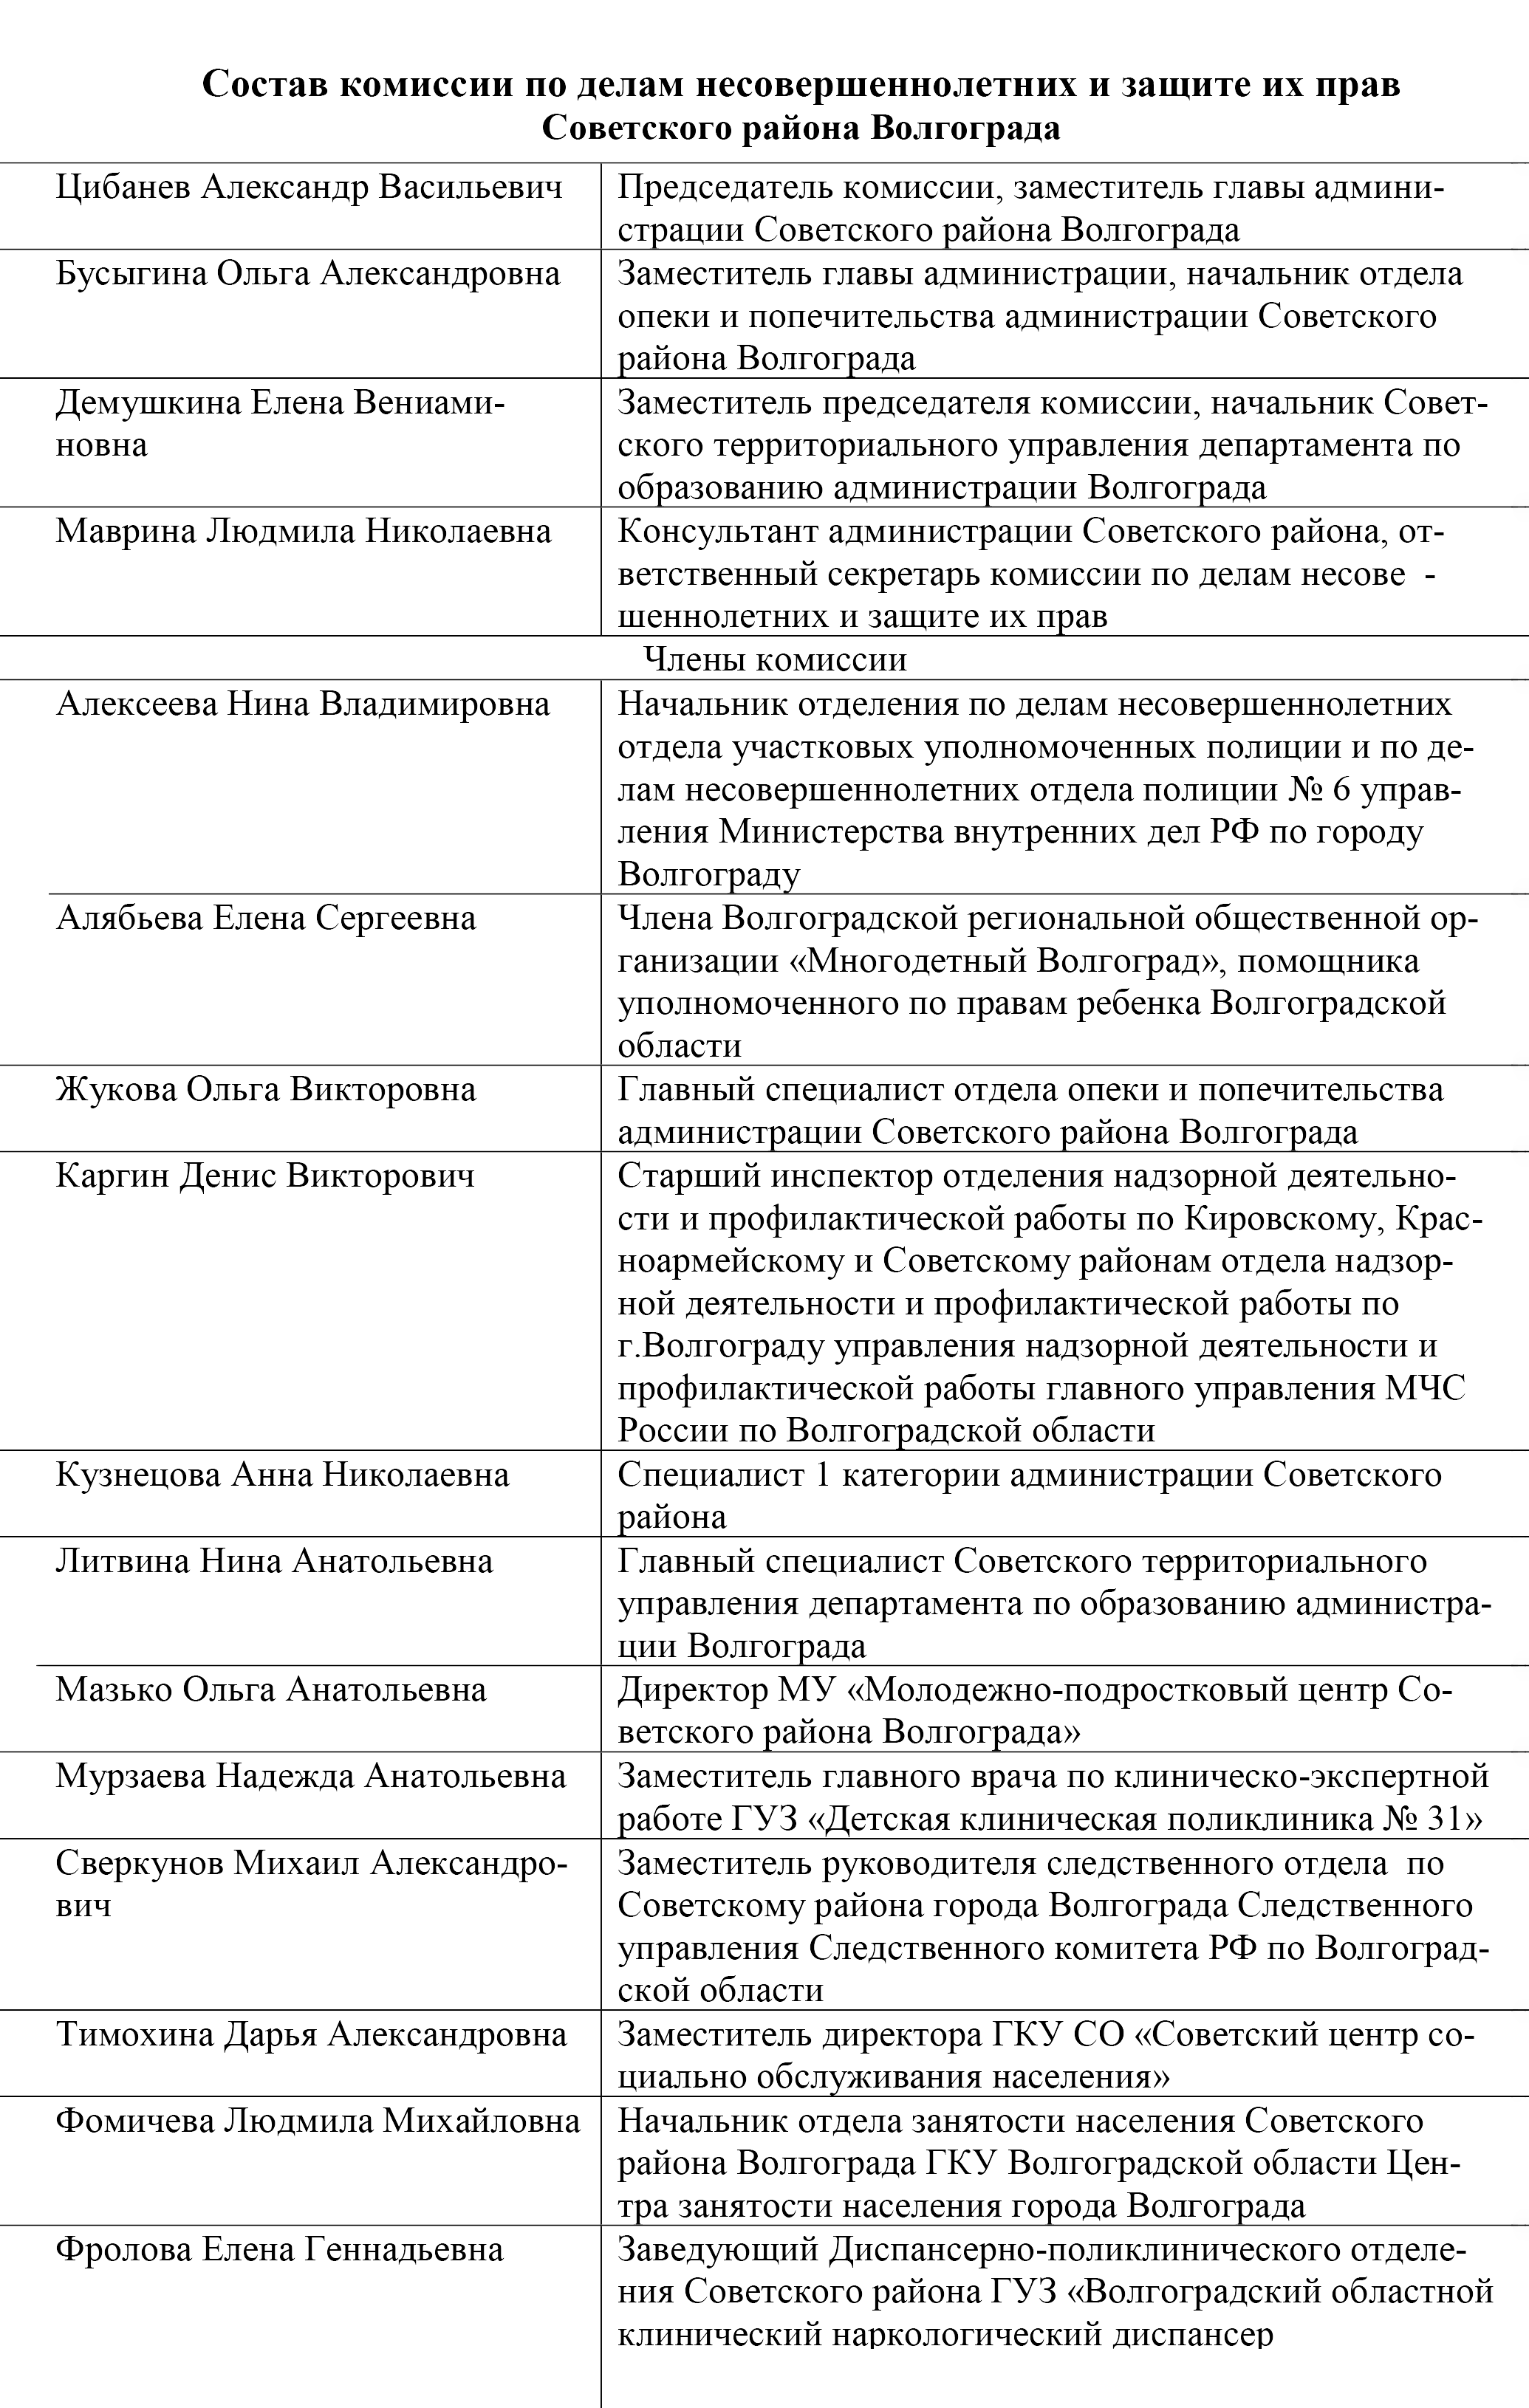 Вот для примера состав КДН одного из районов Волгограда — 16 человек. А в КДН Волгоградской области 22 человека